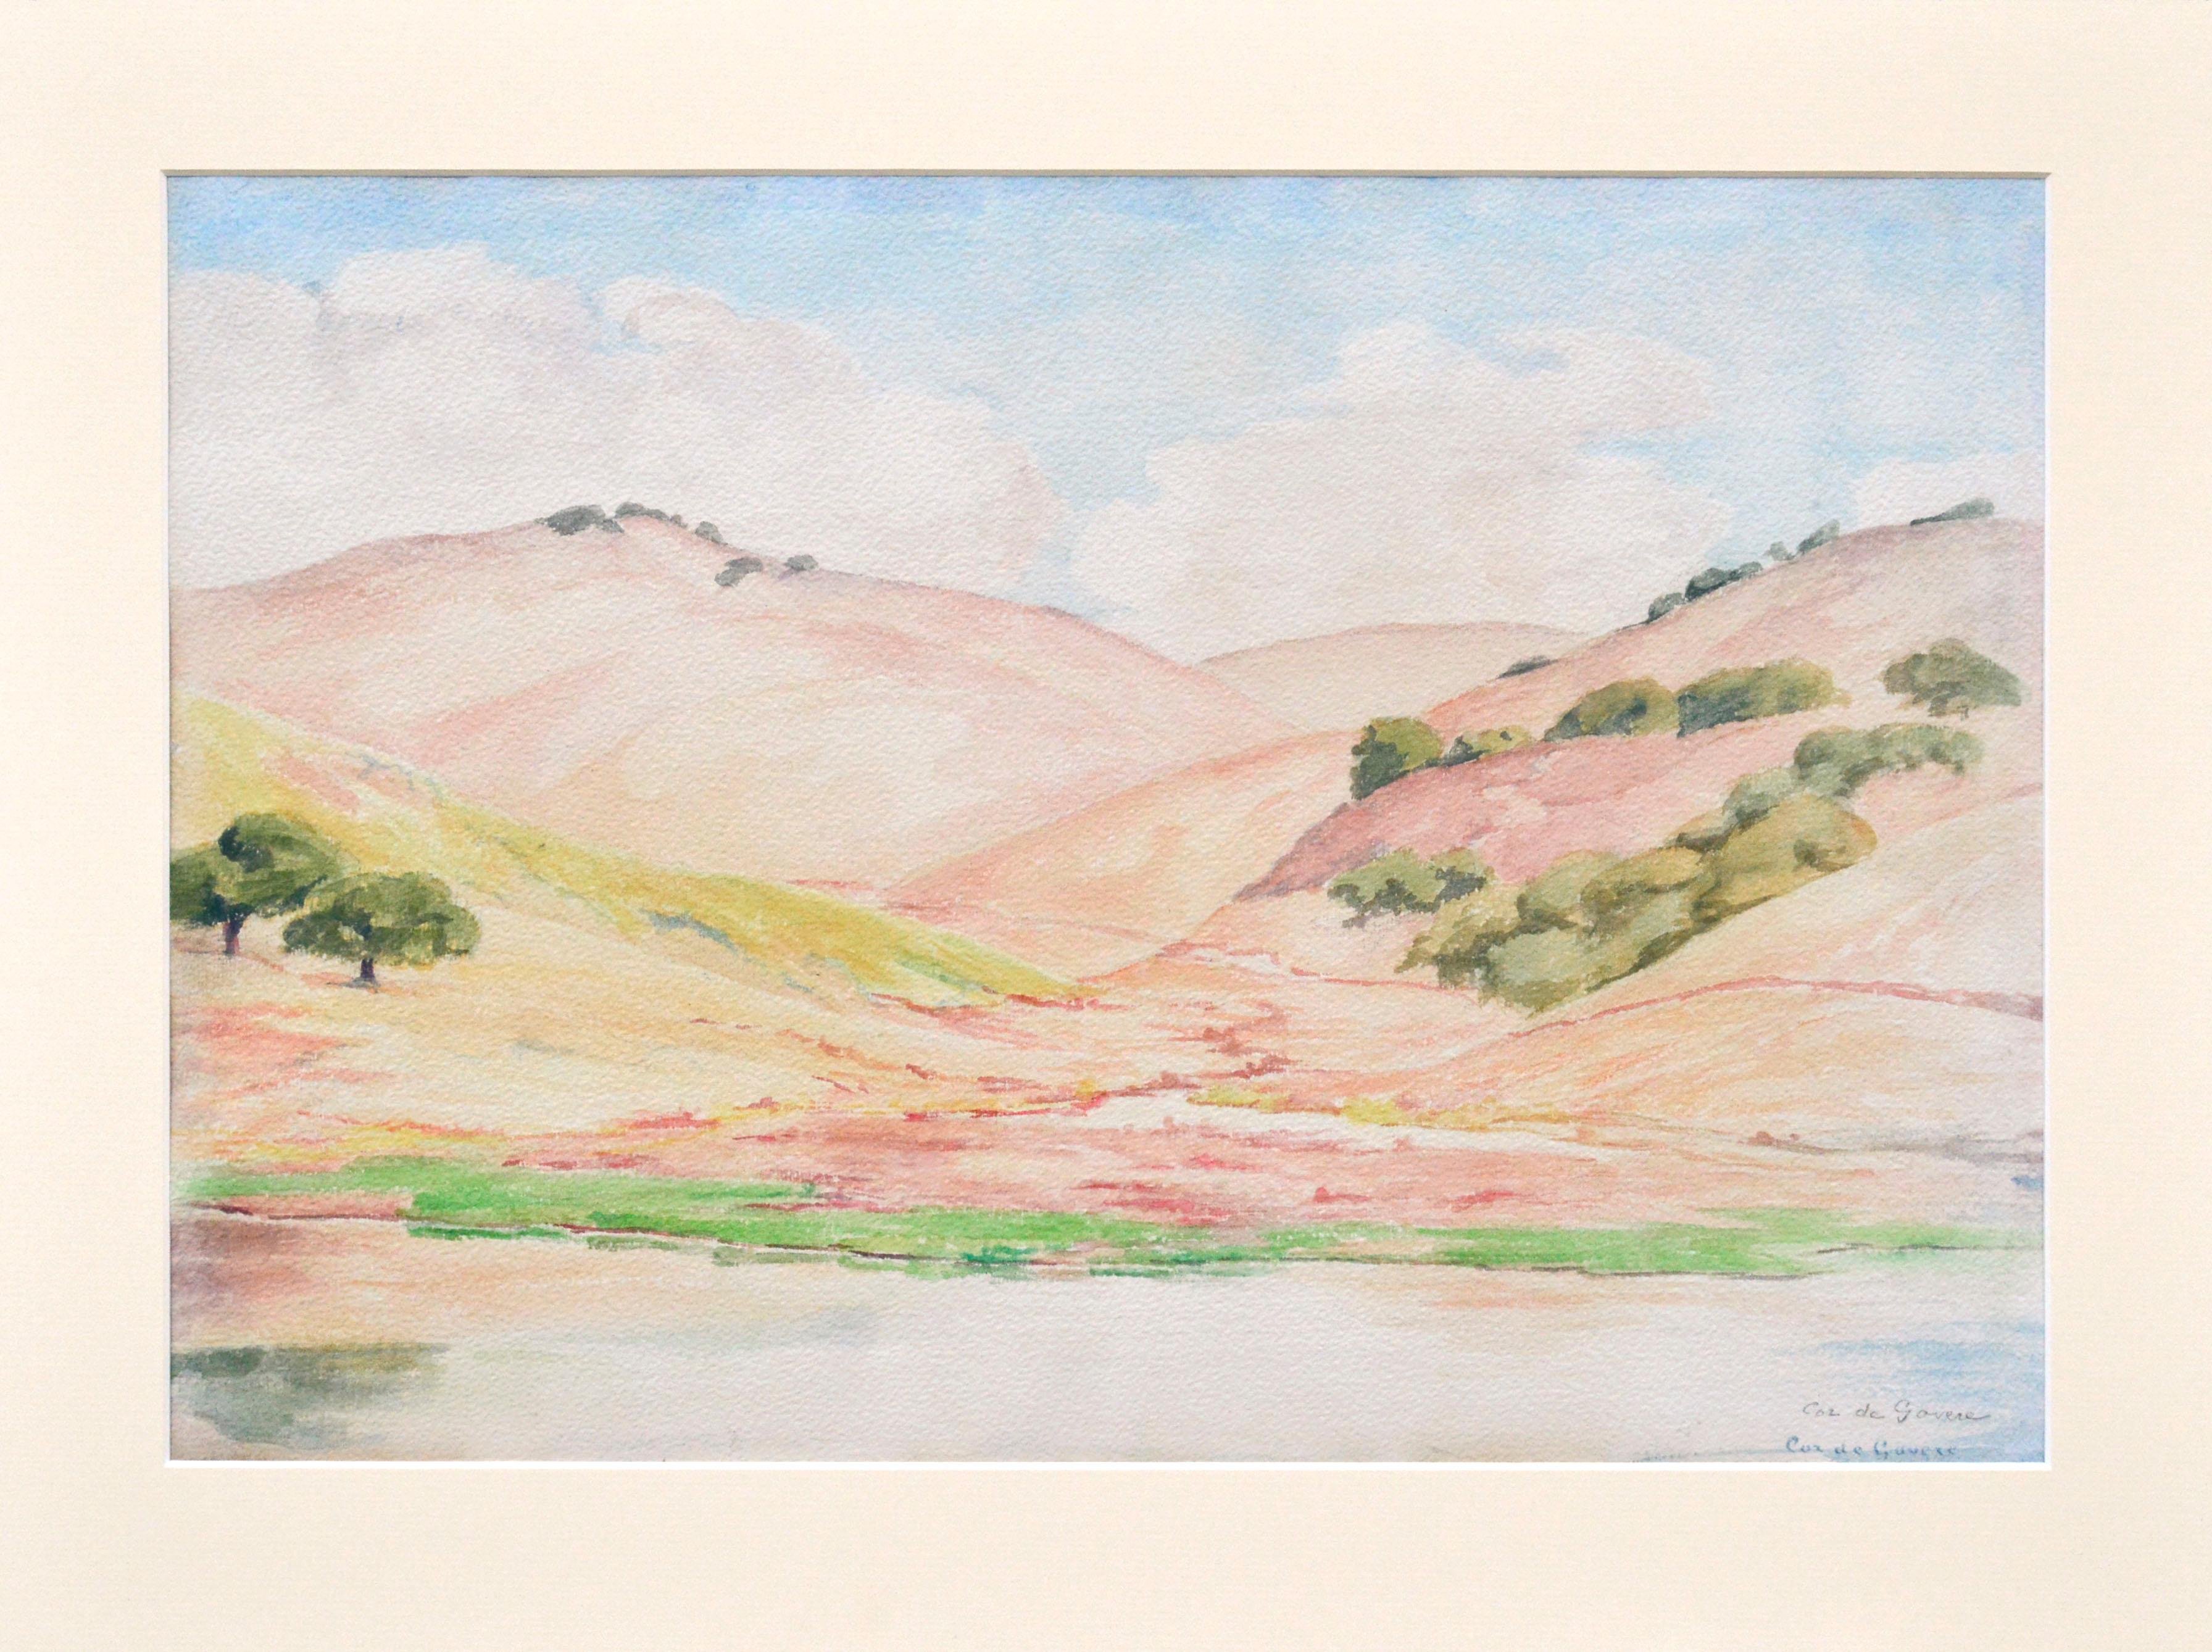 Lebendige kalifornische Landschaft mit rosa und goldenen Hügeln, Eichen und einem Gewässer im Vordergrund. Zweimal signiert, vom Künstler in der rechten unteren Ecke, einmal mit Farbe und ein zweites Mal mit Bleistift. Präsentiert in einer